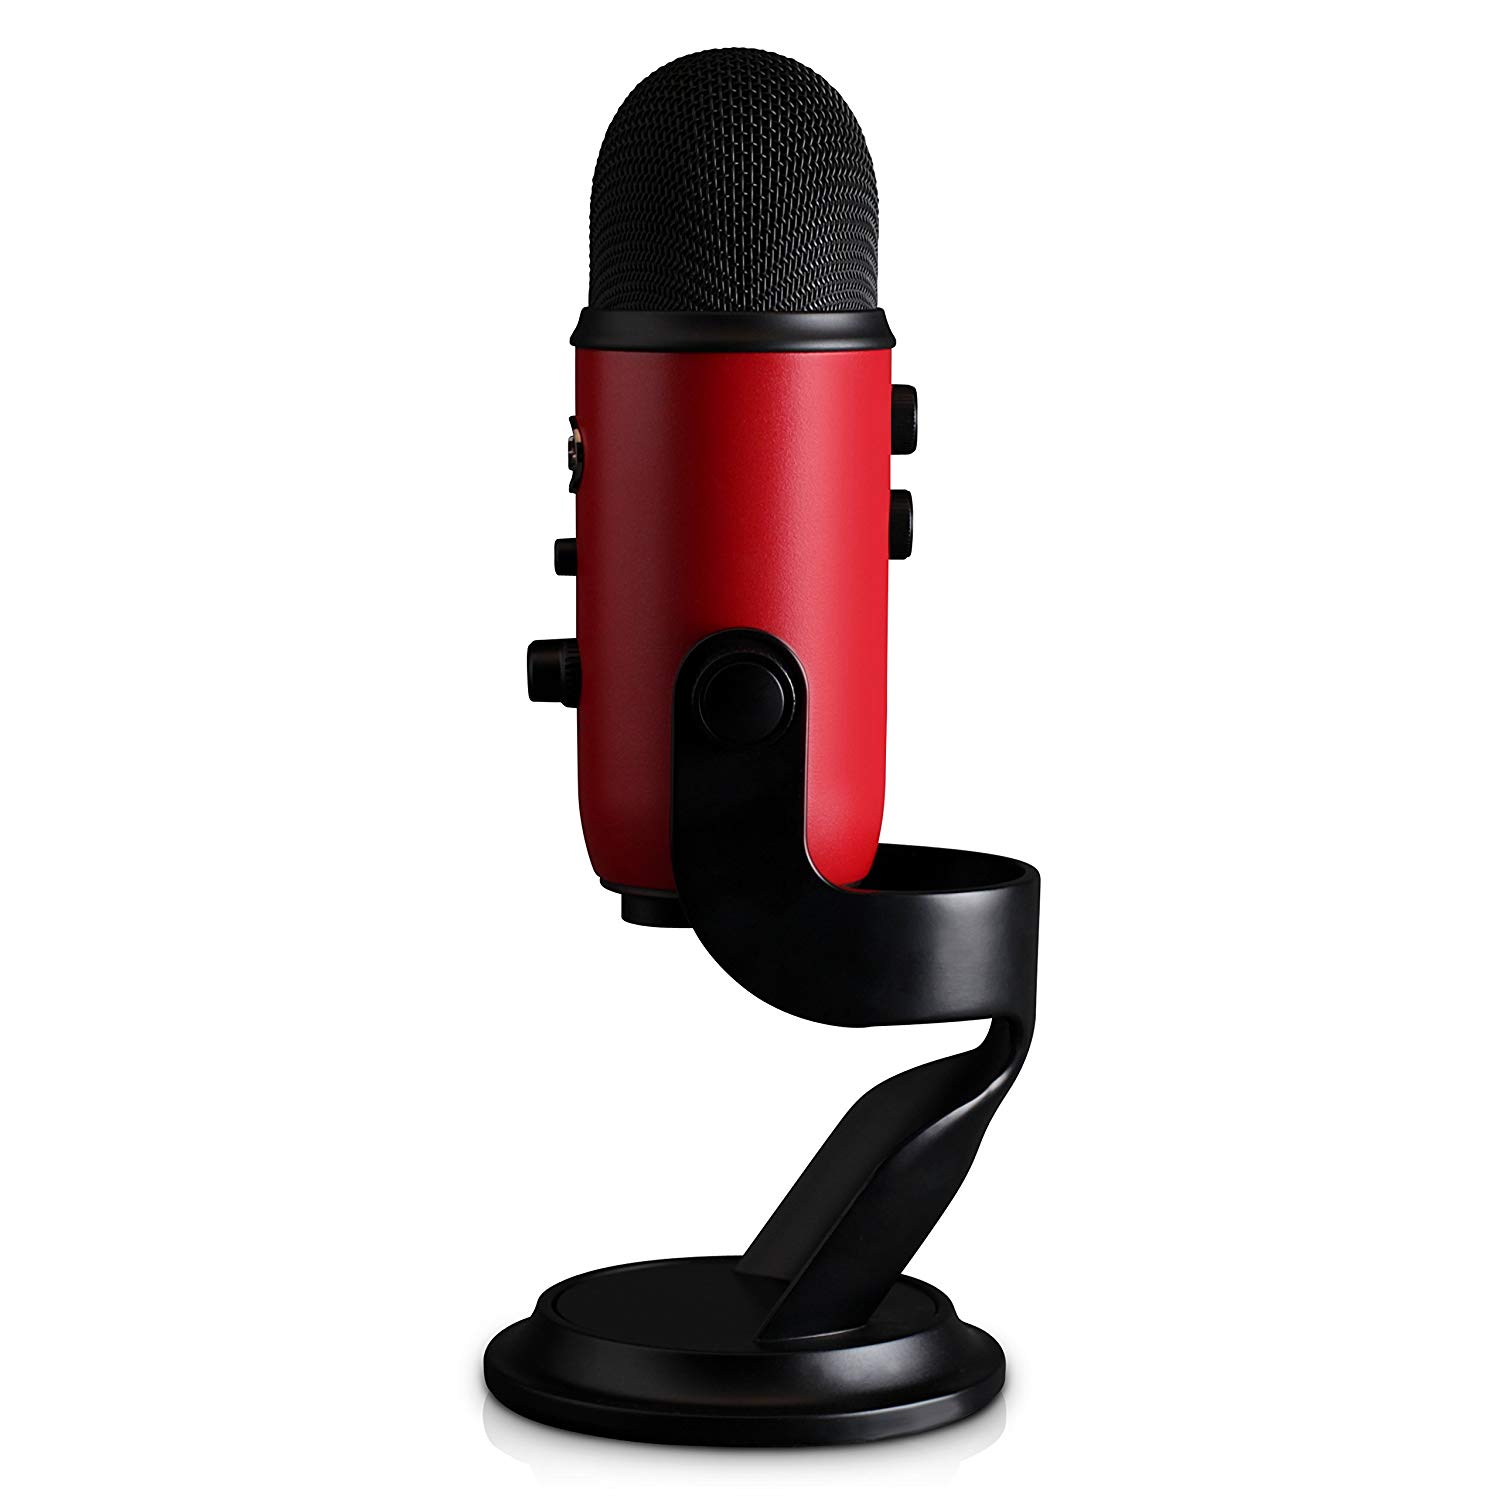 Blue Синий микрофон Yeti USB-микрофон (красный матовый)